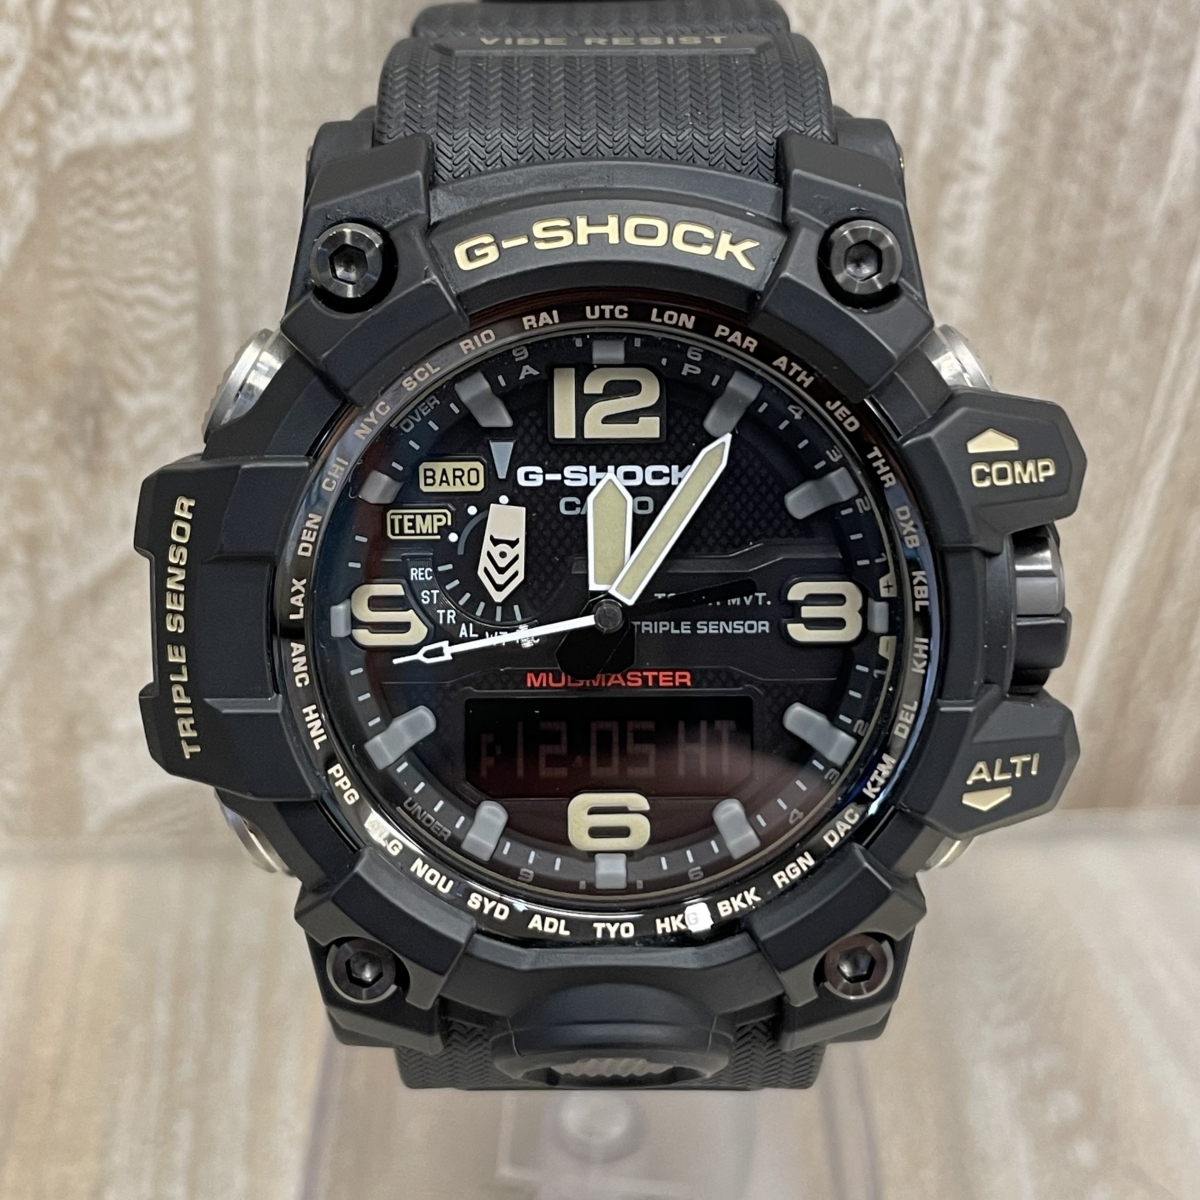 ジーショックのブラック GWG-1000-1AJF マスターオブジー マッドマスター ソーラー電波デジアナ腕時計の買取実績です。